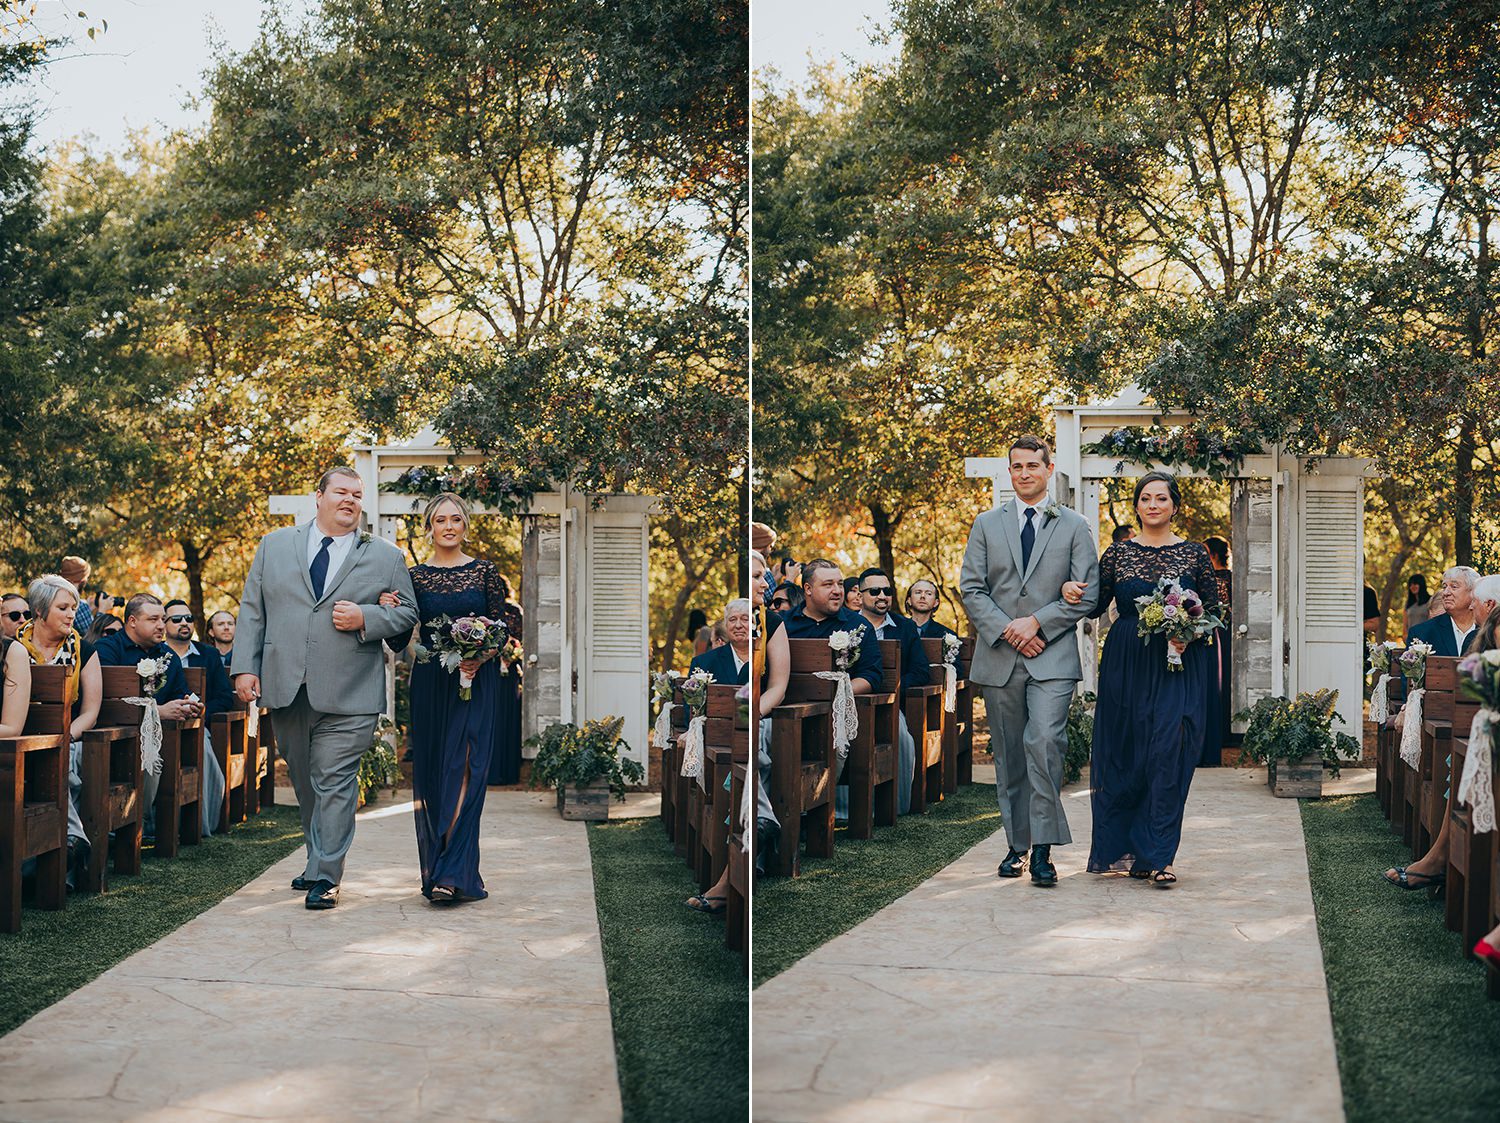 wedding ceremony photography